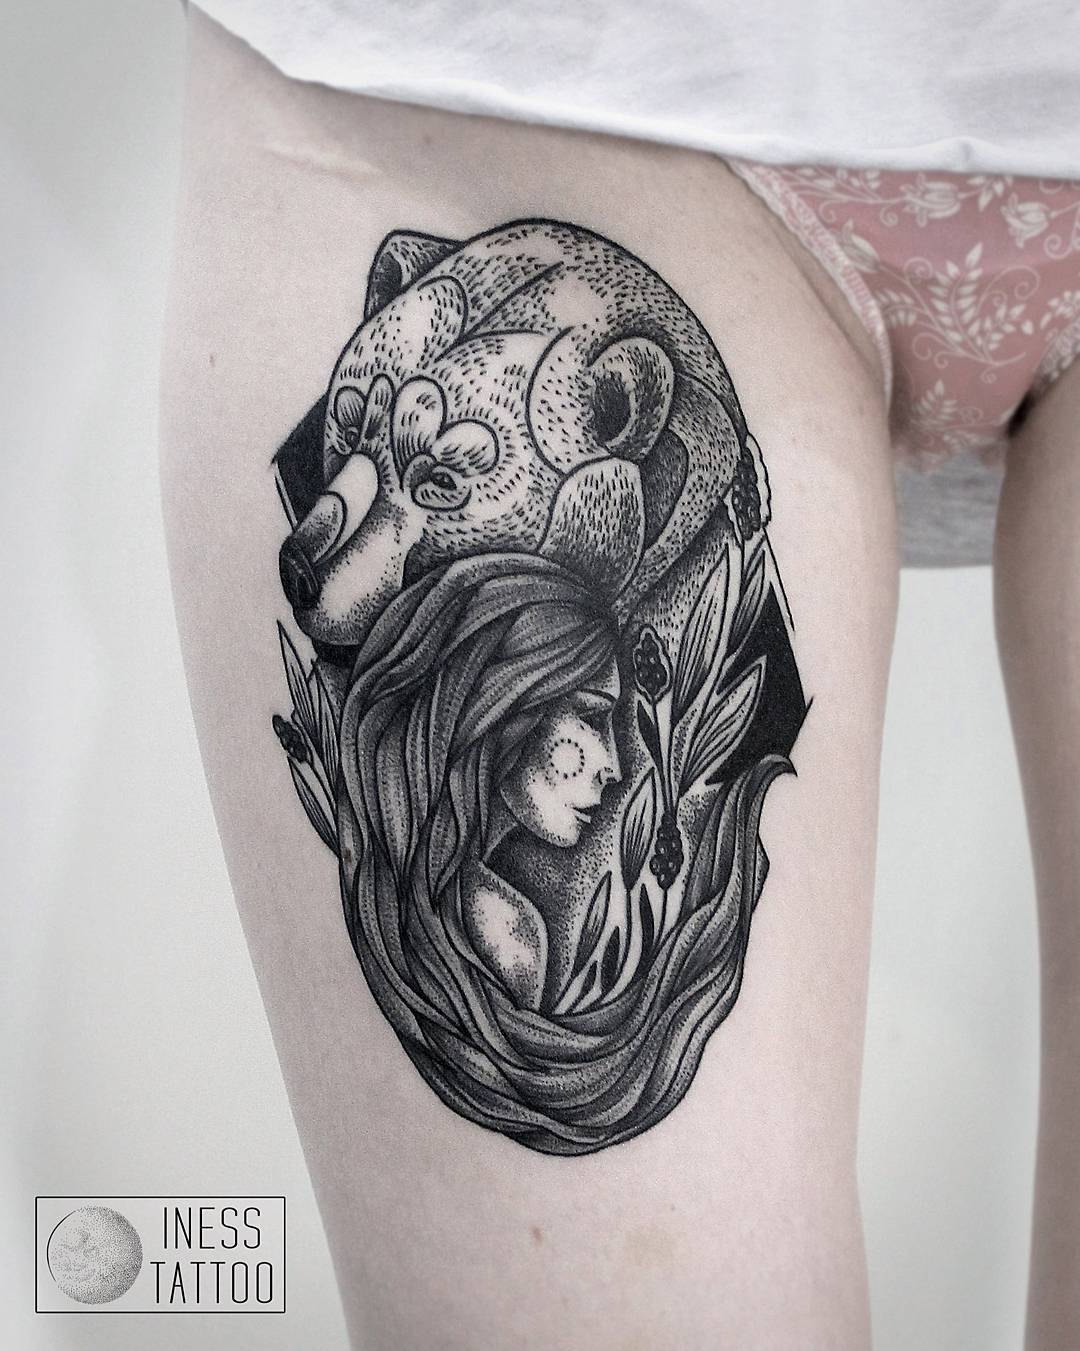 Художественная татуировка "Девушка и медведь", зажившая работа. Мастер- Инесса Кефир.